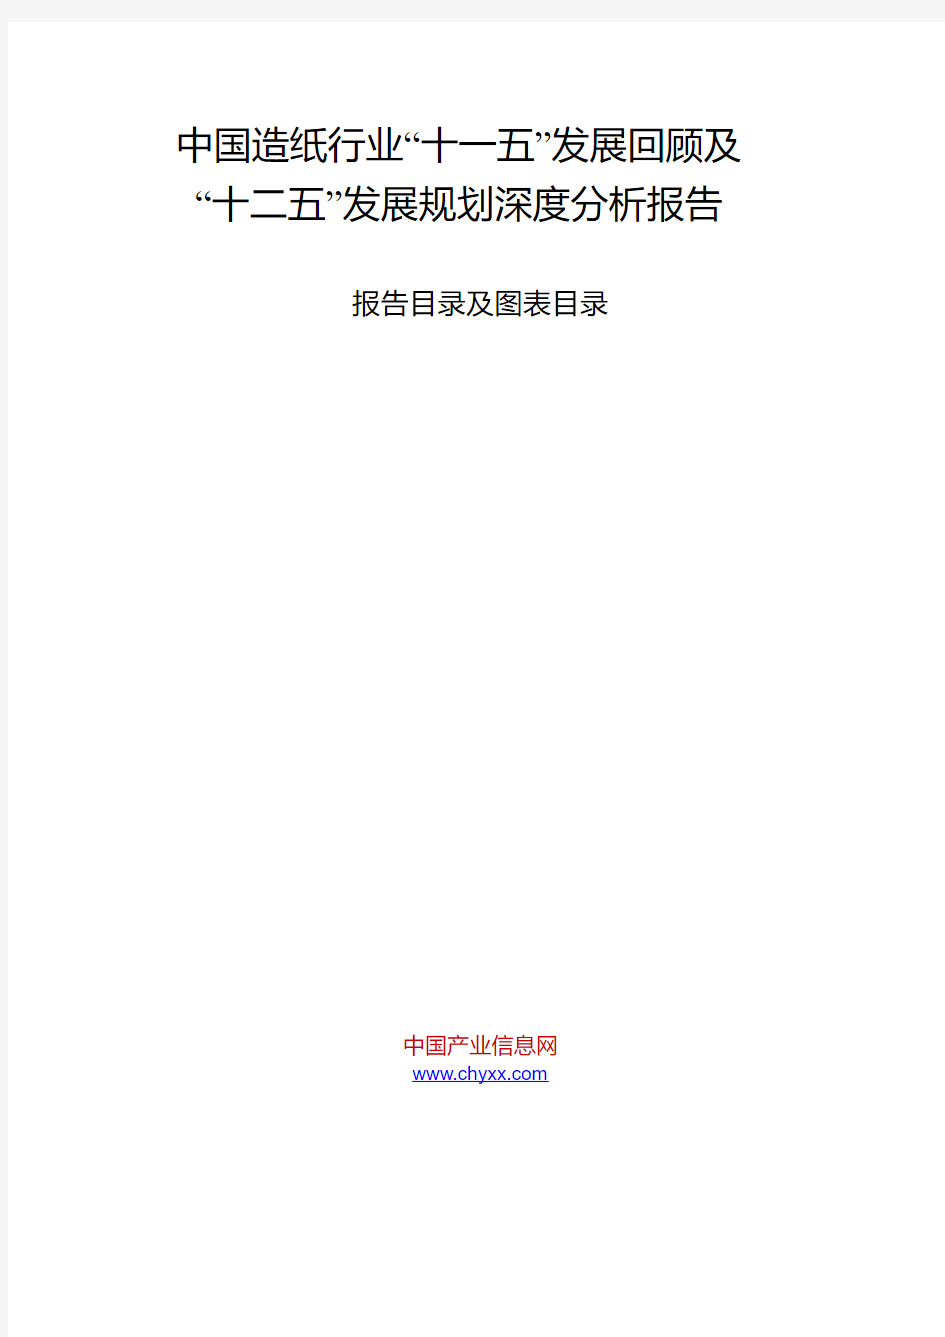 中国造纸行业“十一五”发展回顾及“十二五”发展规划深度分析报告